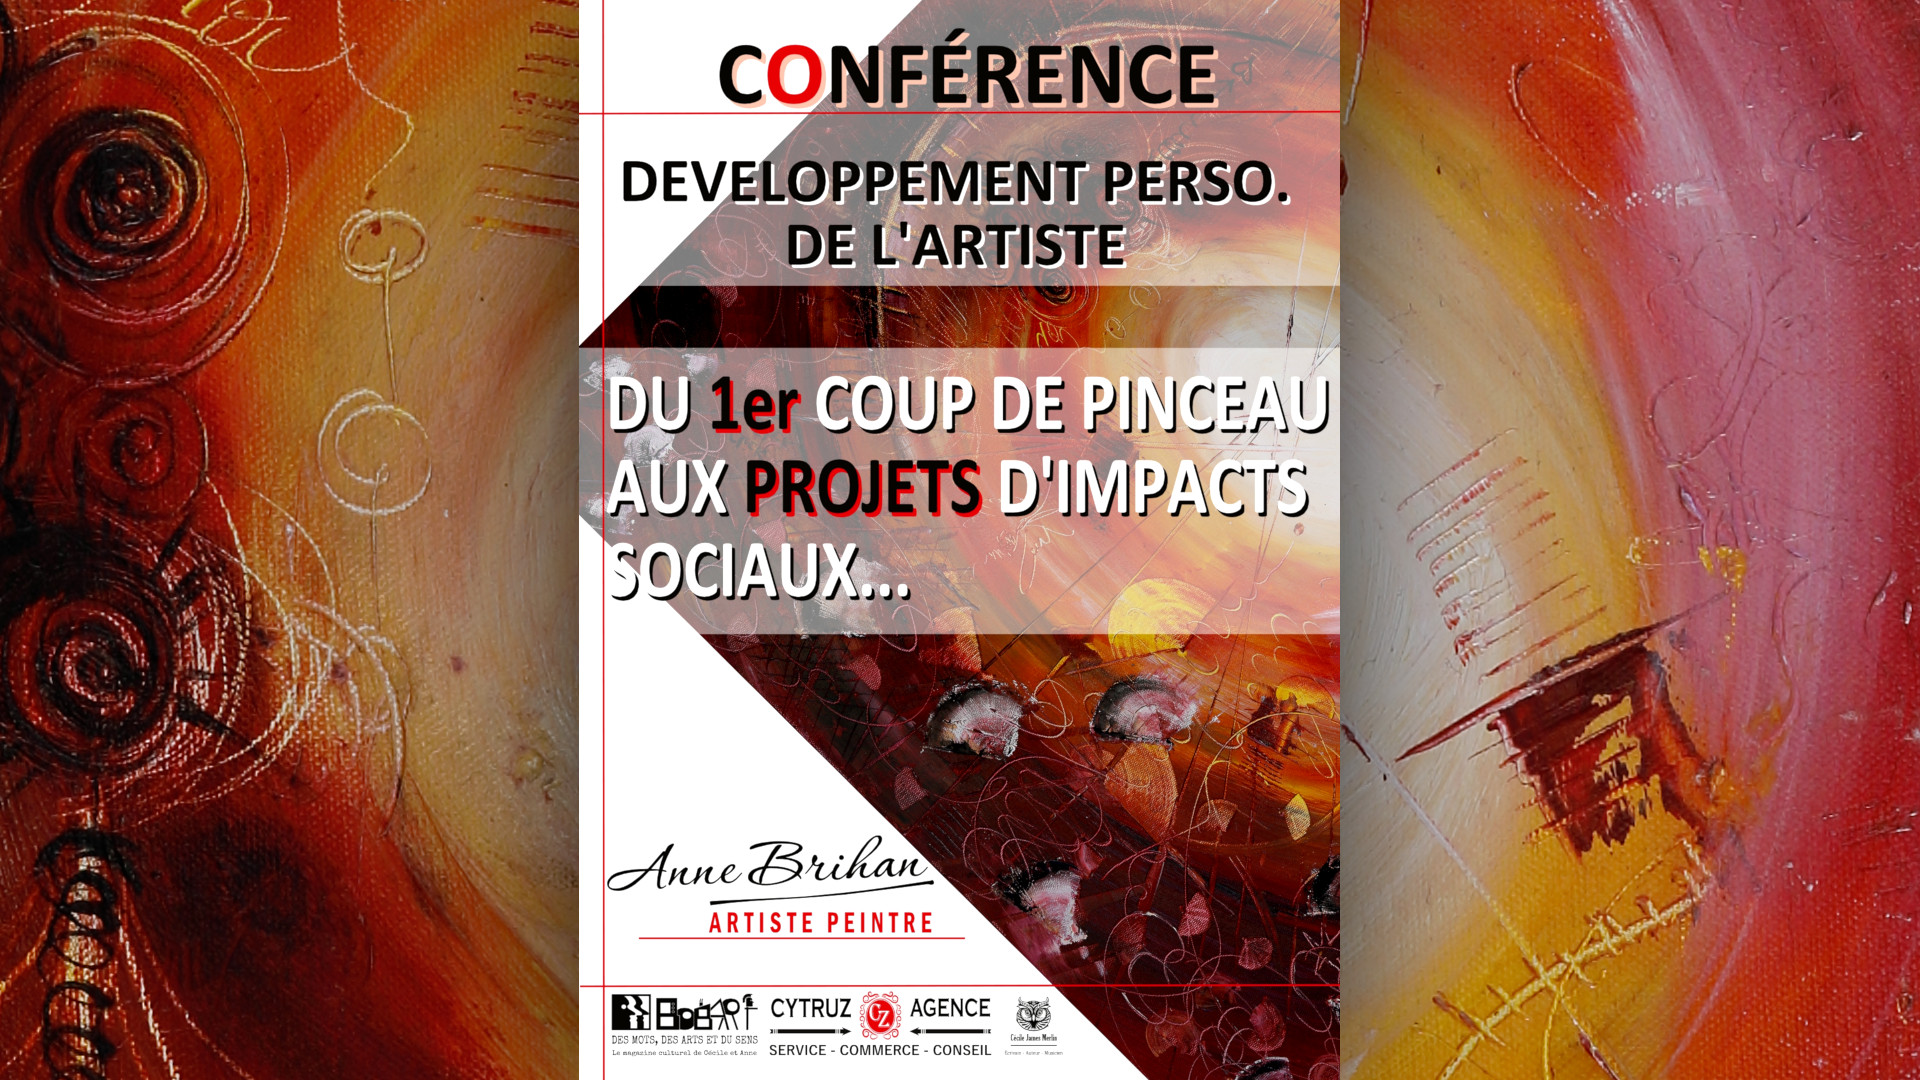 Conférences développement personnel de l'artiste peintre Anne Brihan landes aquitaine France